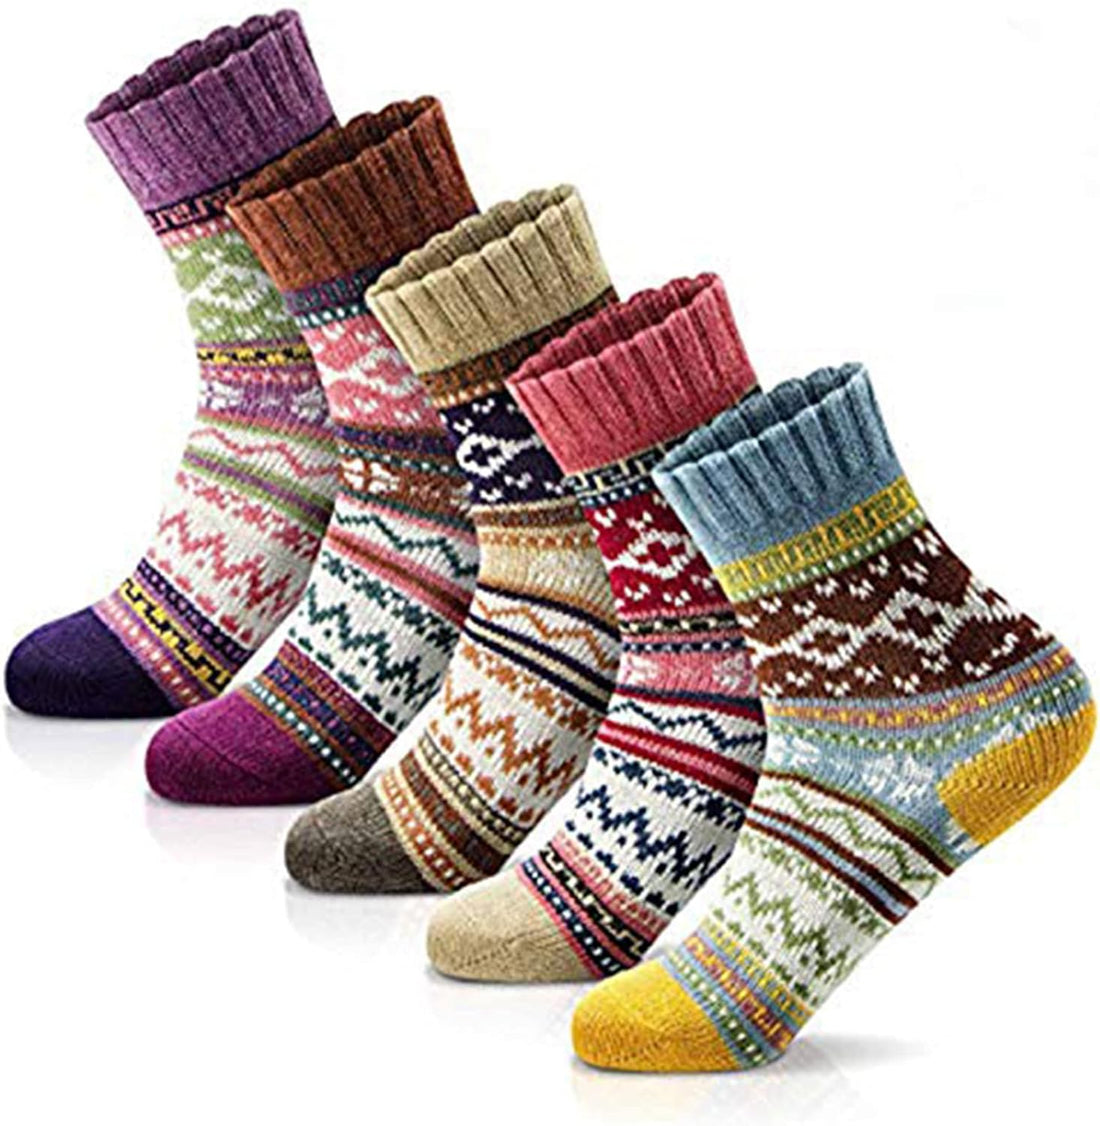 Best winter socks for women